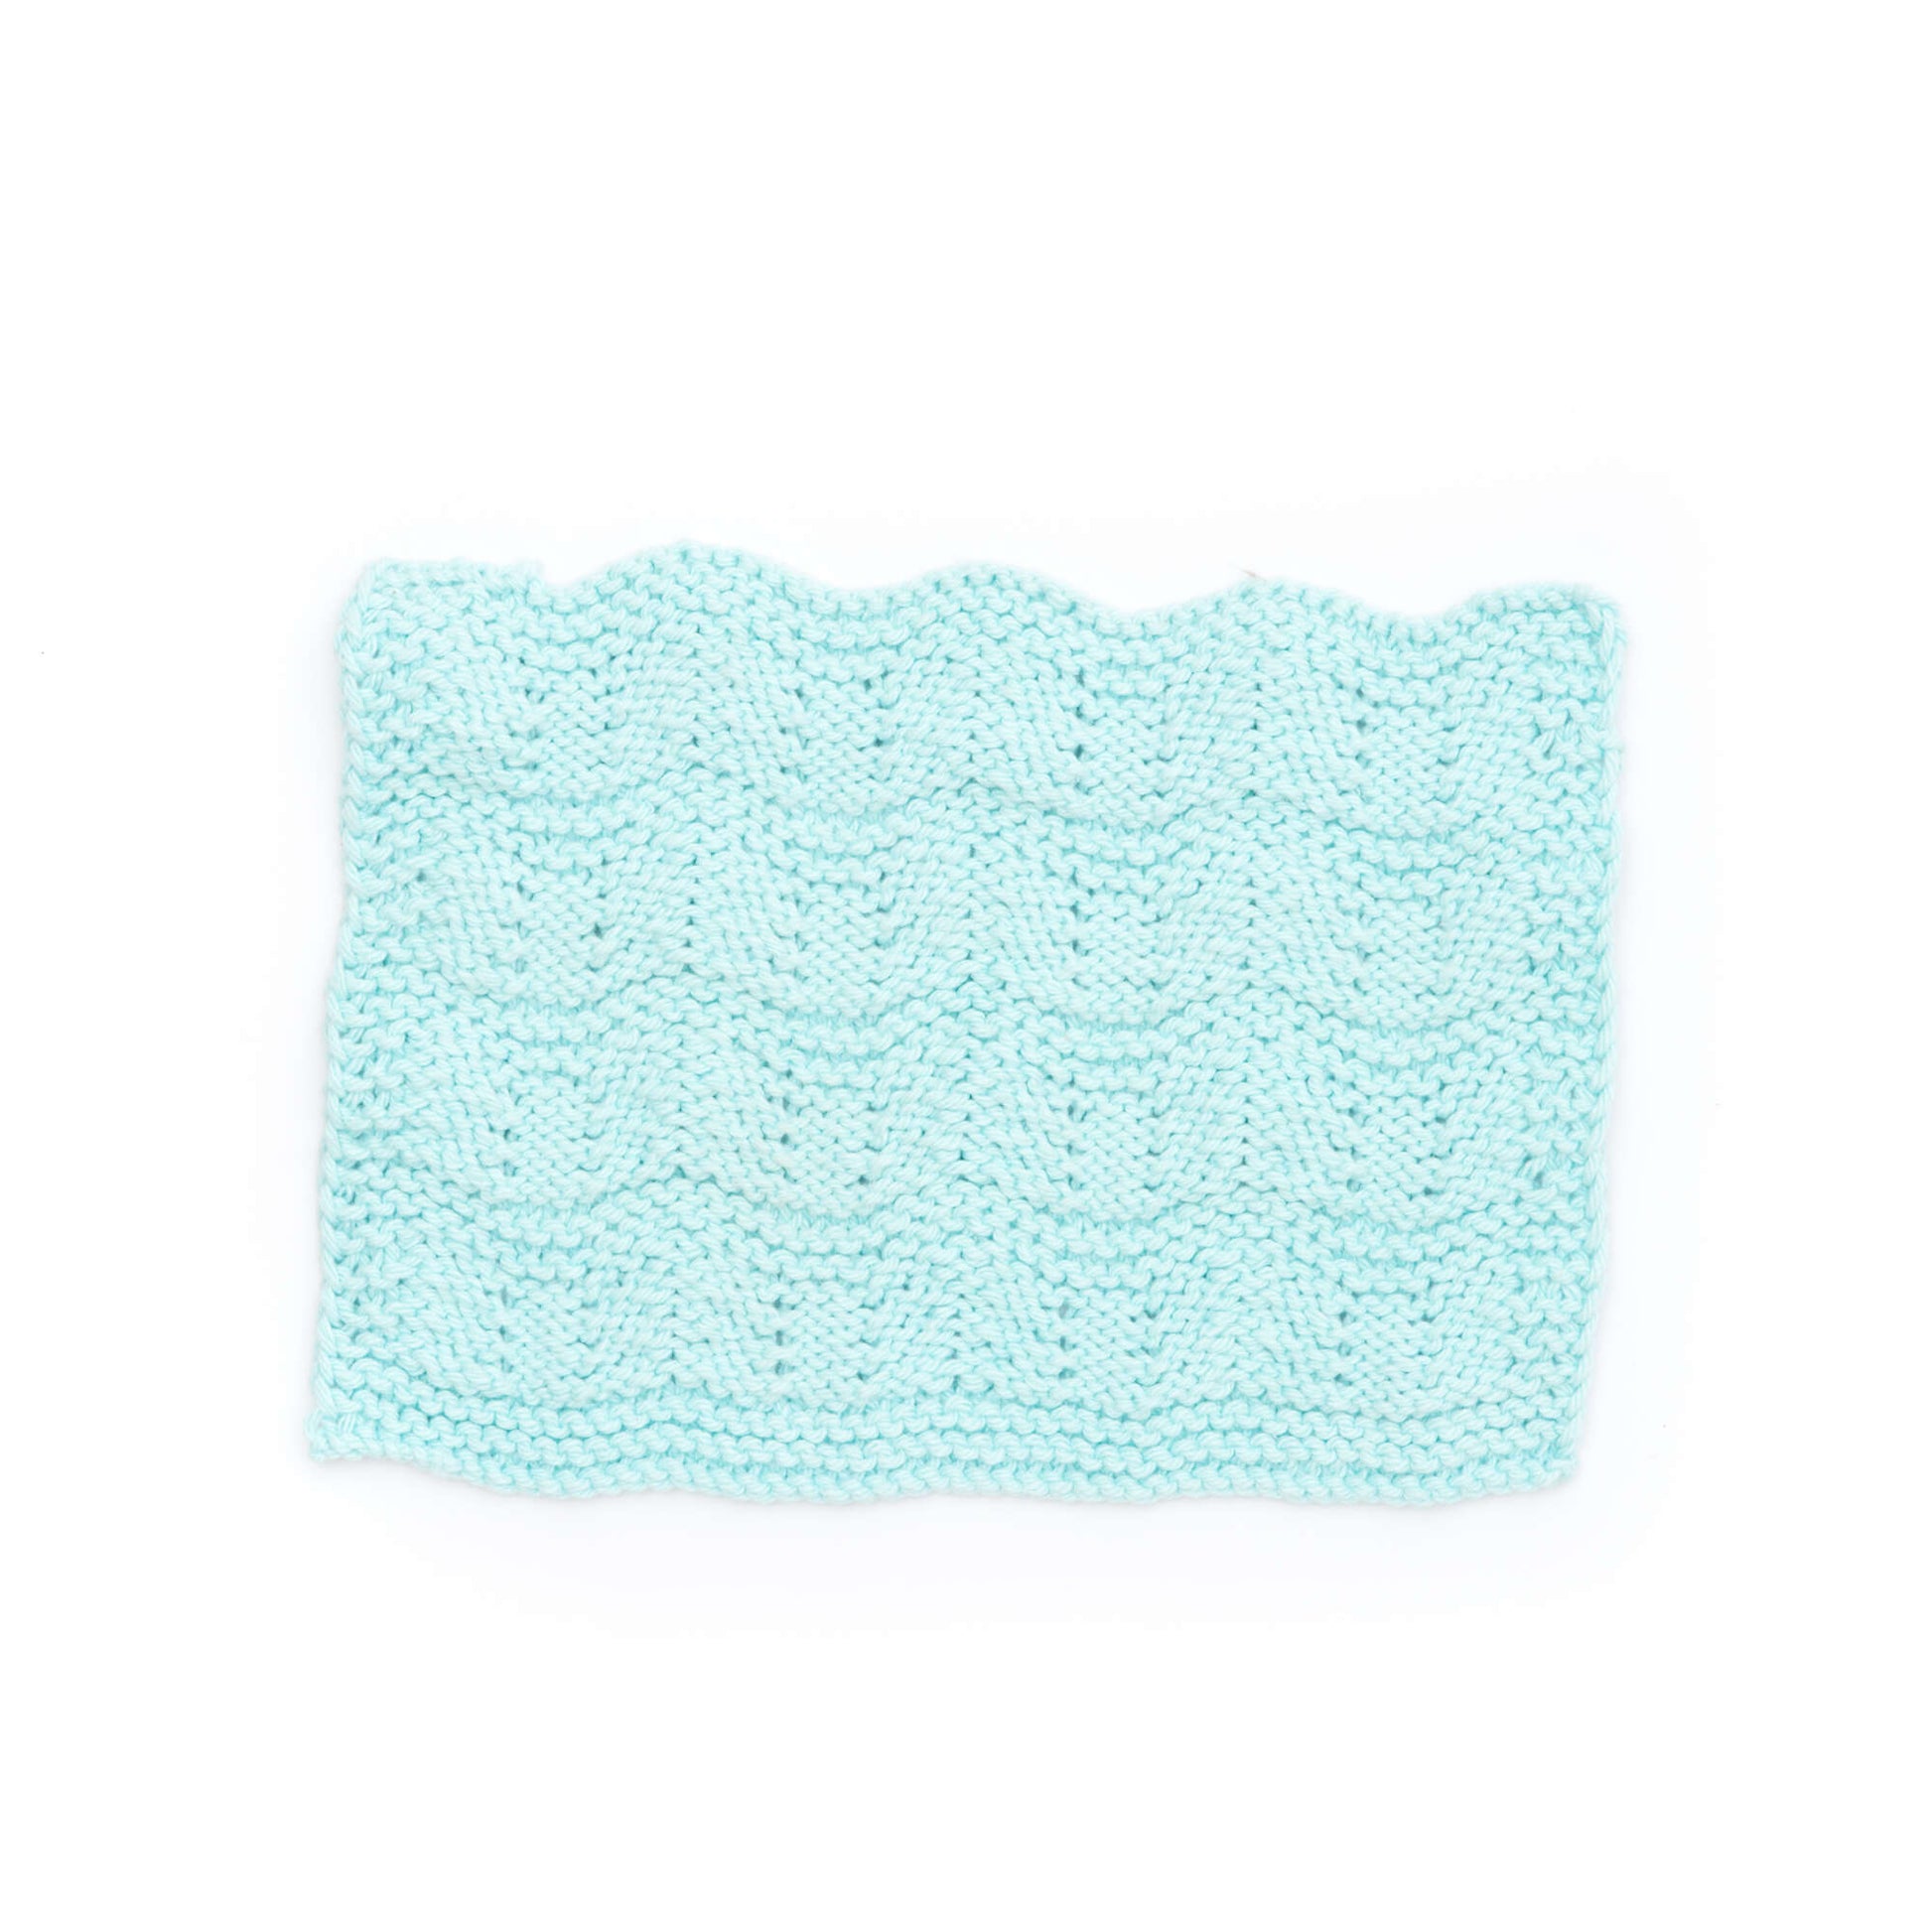 Free Lily Sugar'n Cream Ripple Stitch Dishcloth Knit Pattern